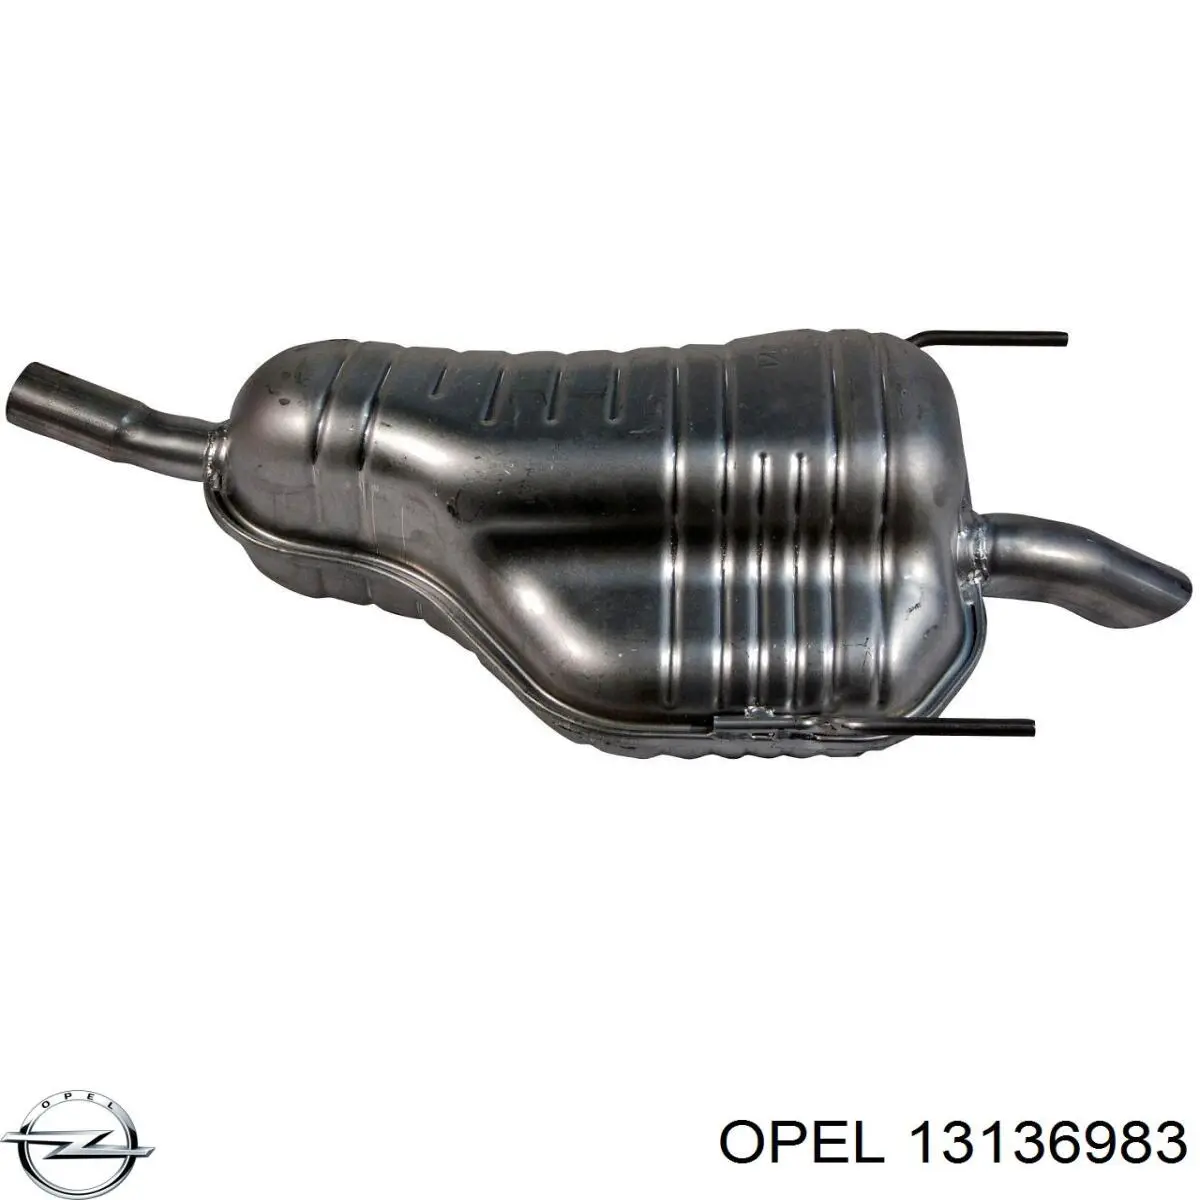 13136983 Opel глушитель, задняя часть